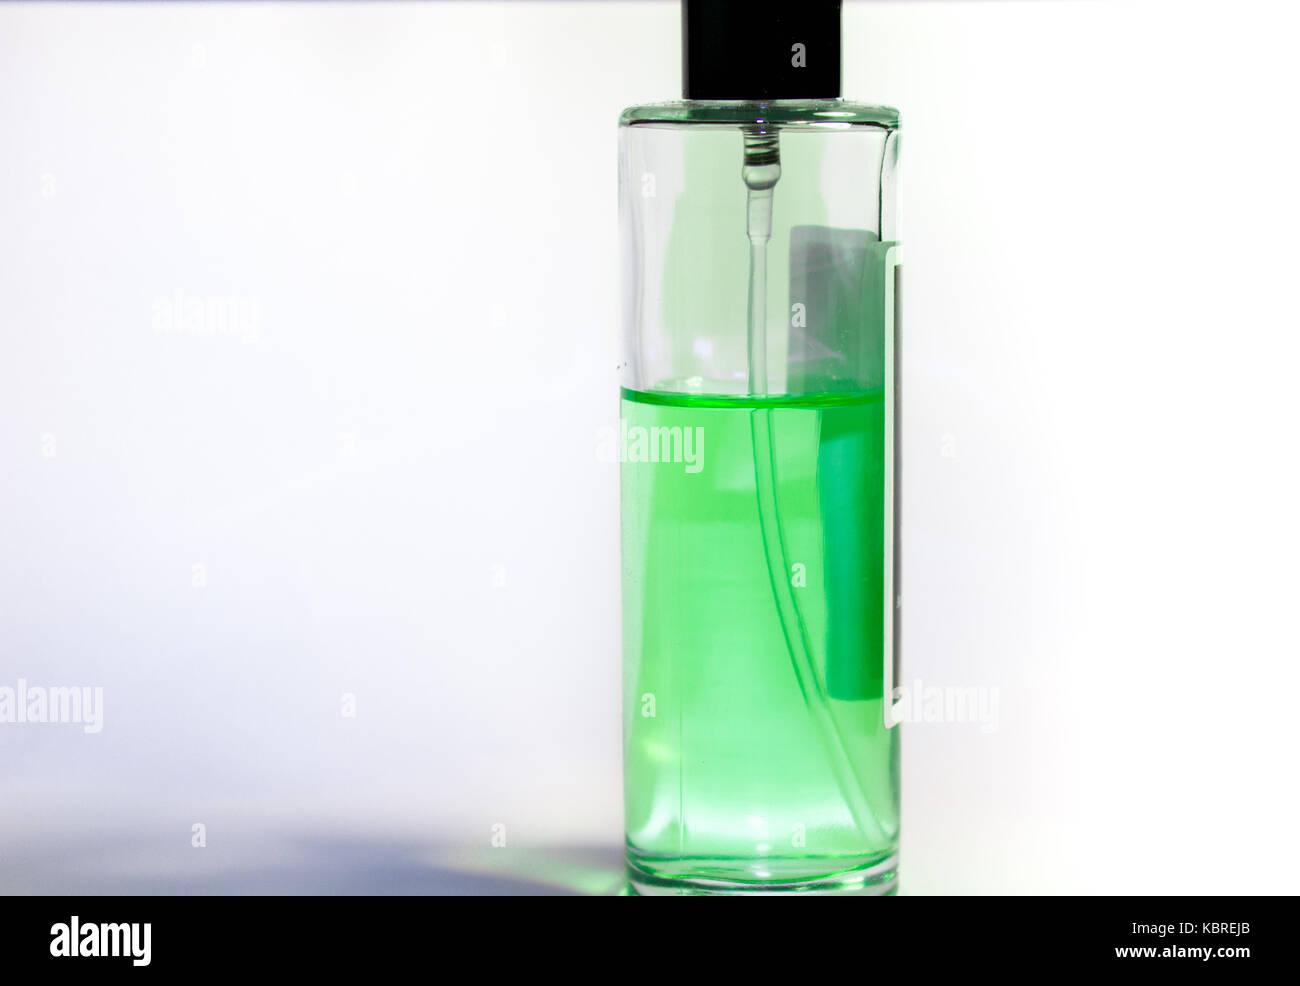 Forkorte skøjte Alvorlig Perfume experiment hi-res stock photography and images - Alamy